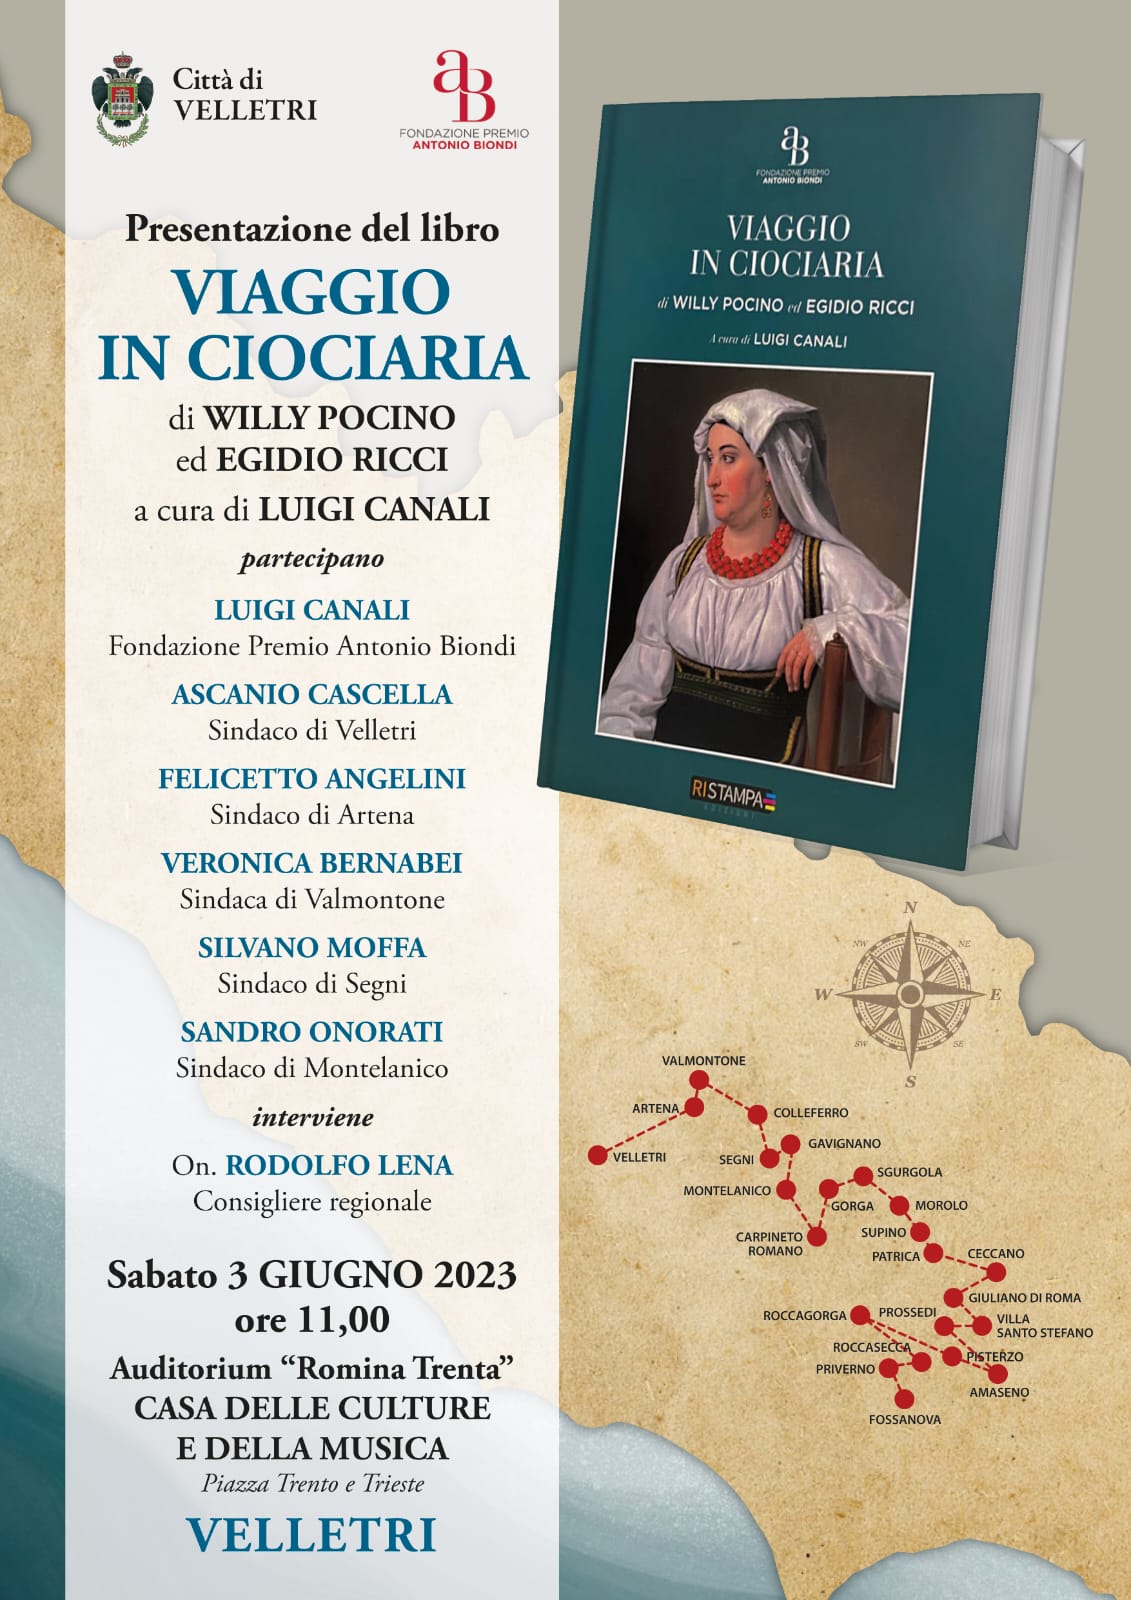 Presentazione del volume “Viaggio in Ciociaria” di Willy Pocino ed Egidio Ricci